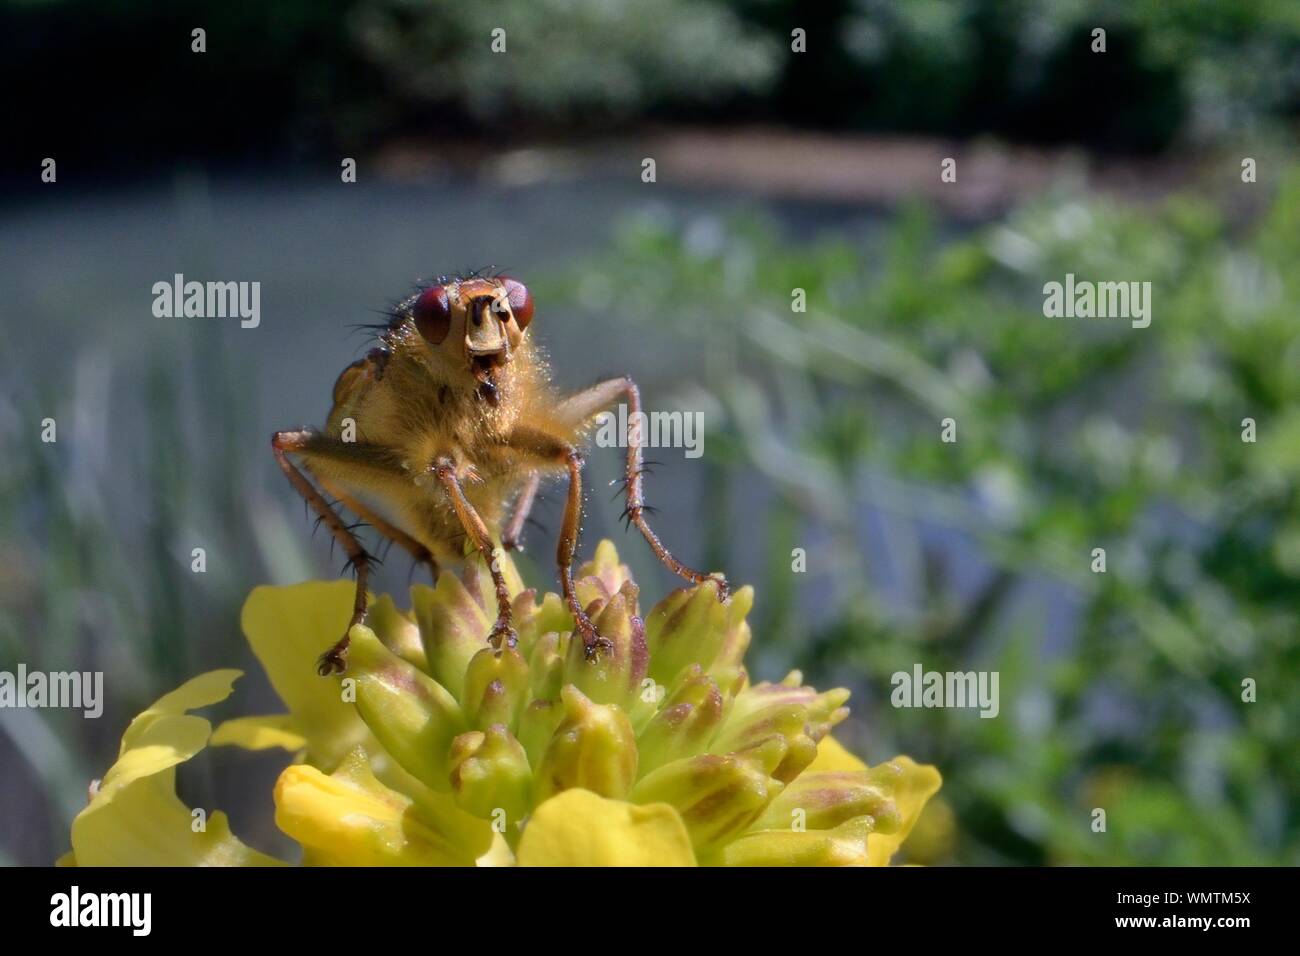 Sterco giallo fly (Scathophaga stercoraria) caccia preda su un razzo giallo flowerhead (Barbarea vulgaris) su un argine, Wiltshire, Regno Unito, maggio. Foto Stock